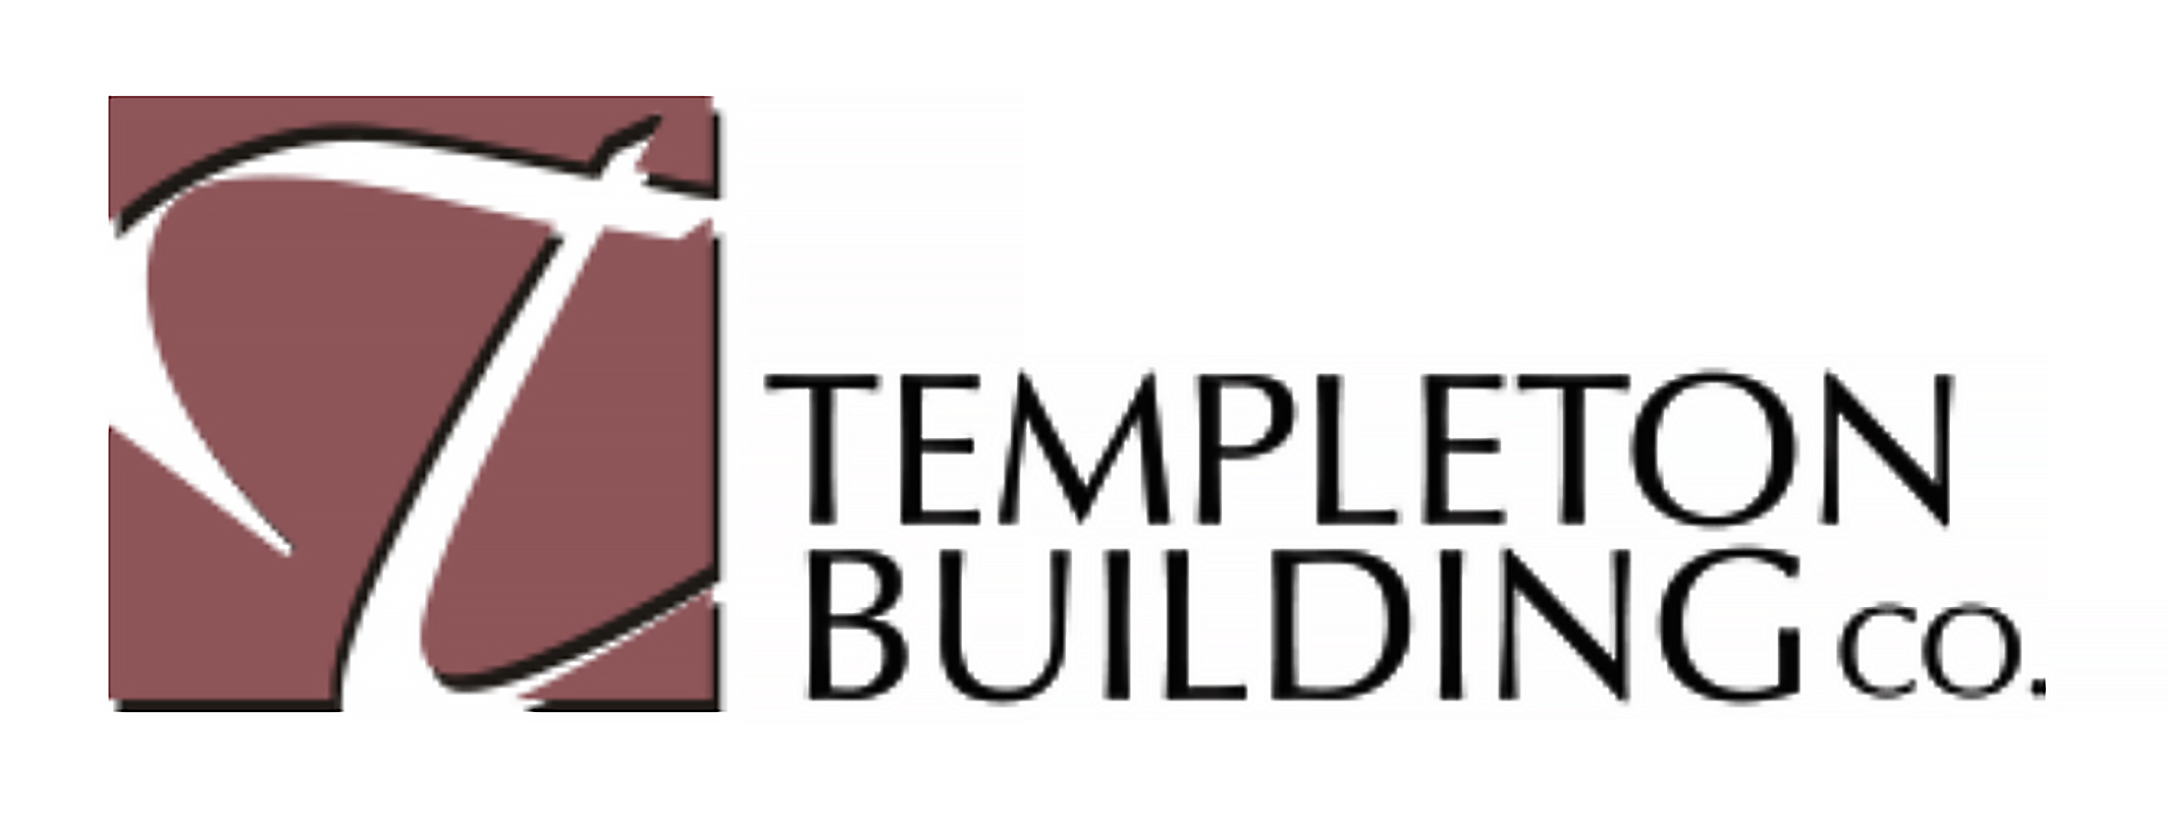 Templeton Building Co.</p>
<p>